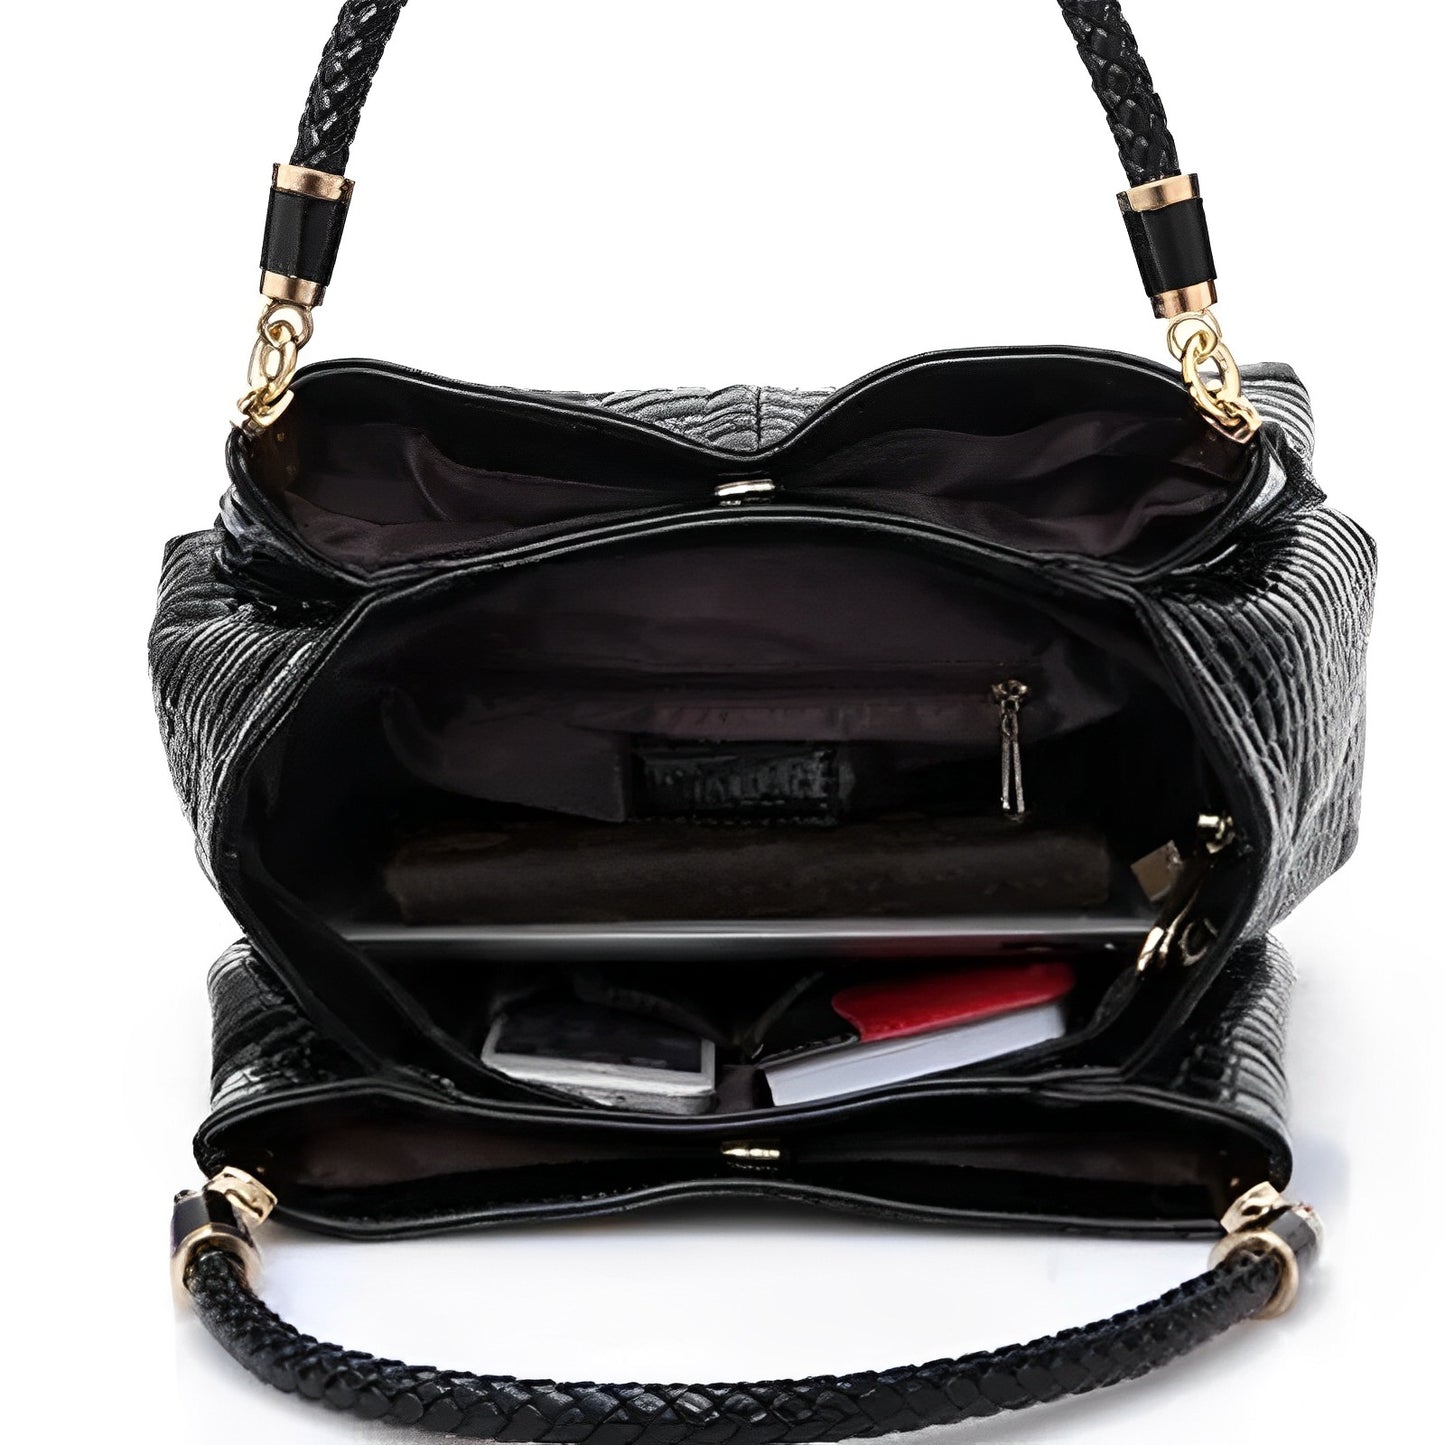 Bagzy Aura: An Elegant Handbag - BagzyBag